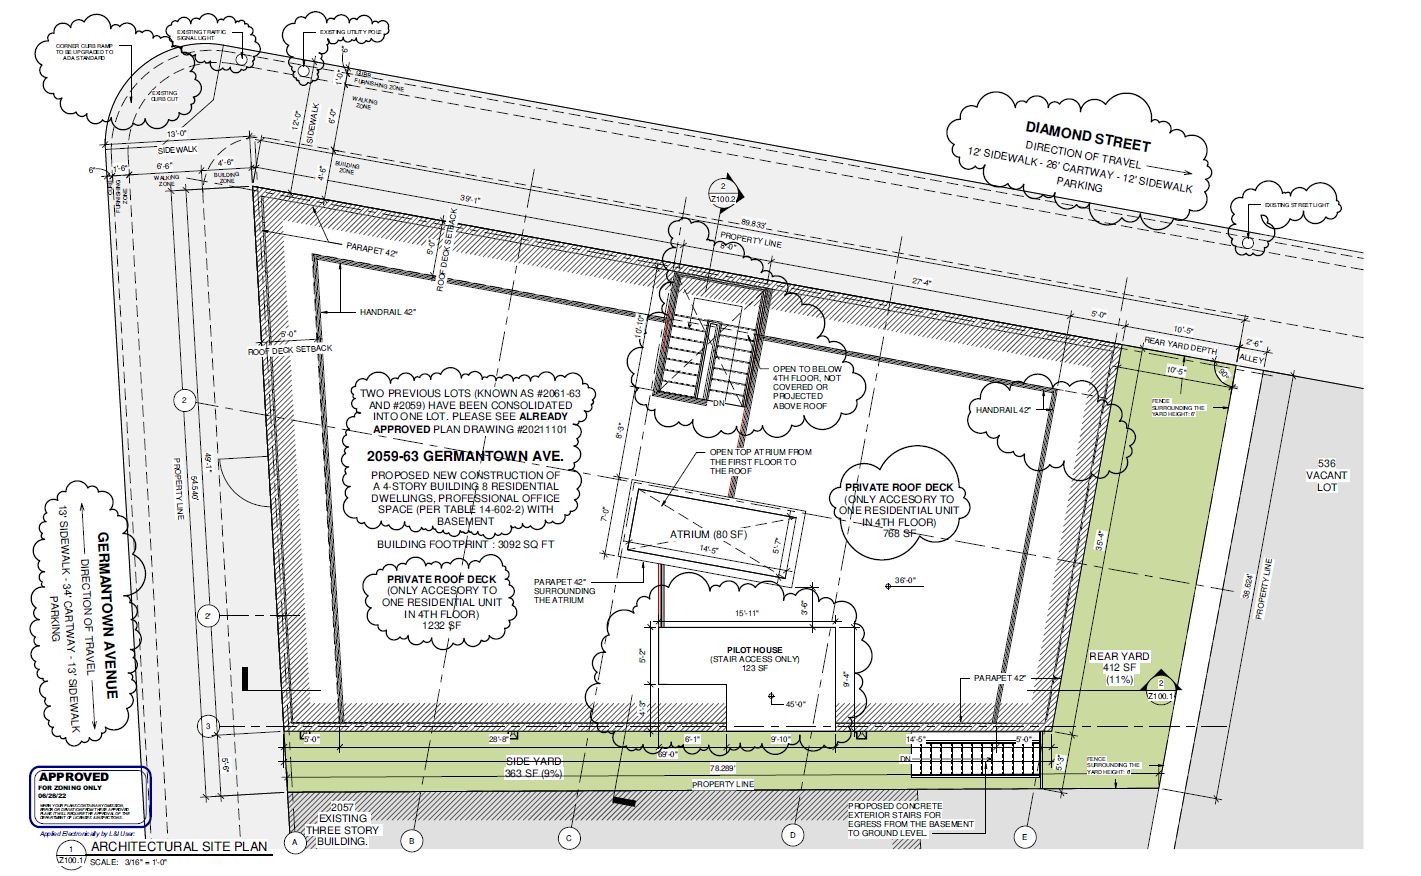 2059 Germantown Avenue. Site plan. Credit: Plato Marinakos of Plato Studio via the City of Philadelphia